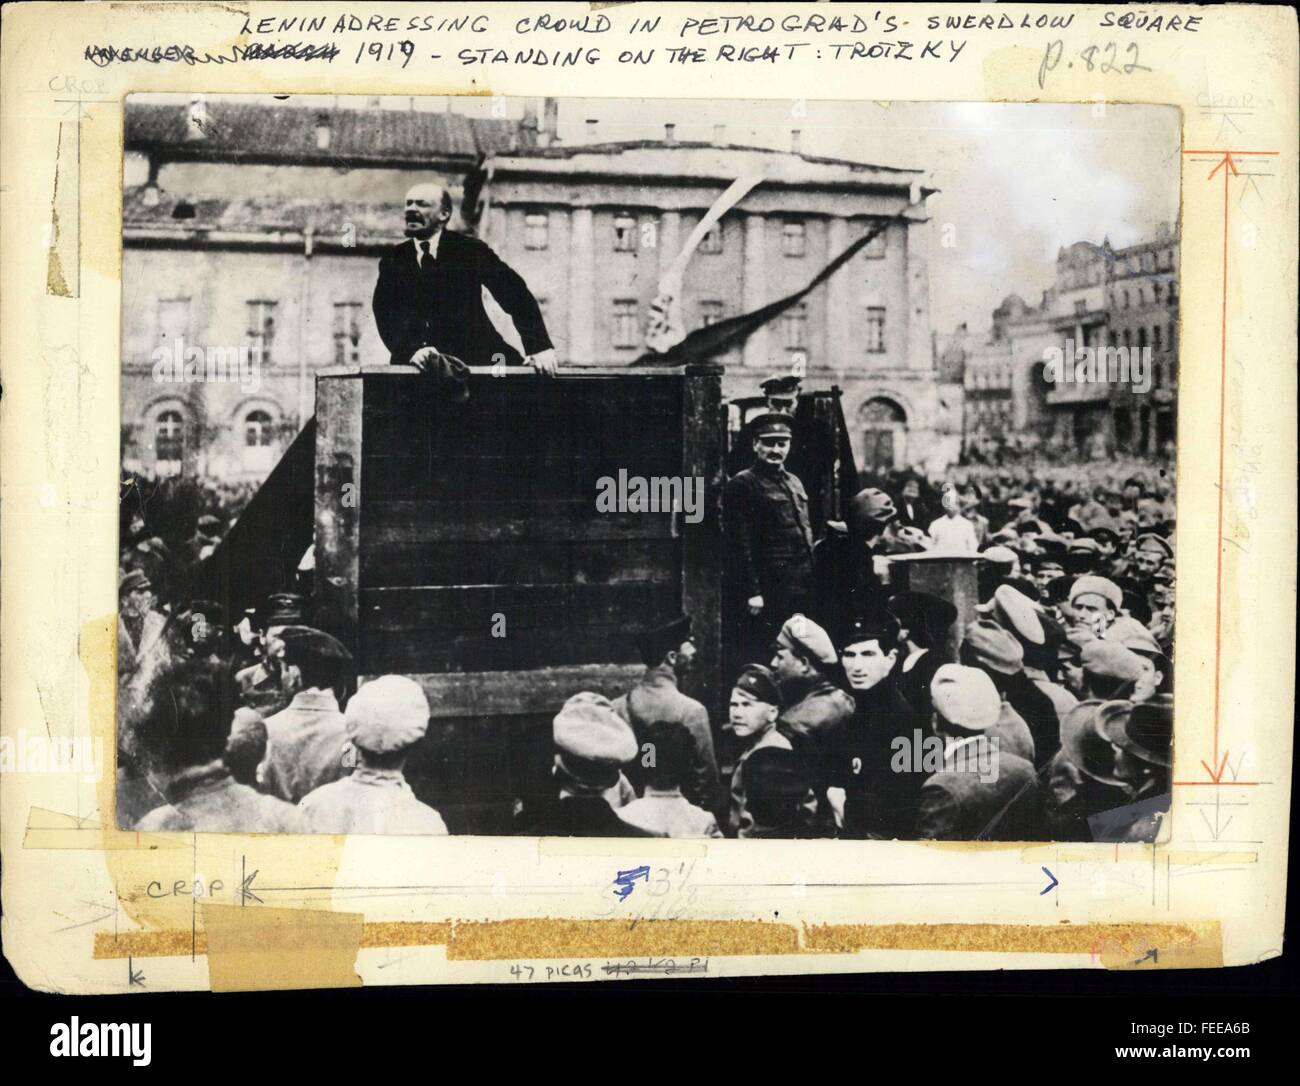 1919 - Lenin Adressierung Publikum In Petrograd die Swerdlow-Platz 1919 - stehen auf der rechten Seite - Trotzky. © Keystone Bilder USA/ZUMAPRESS.com/Alamy Live-Nachrichten Stockfoto